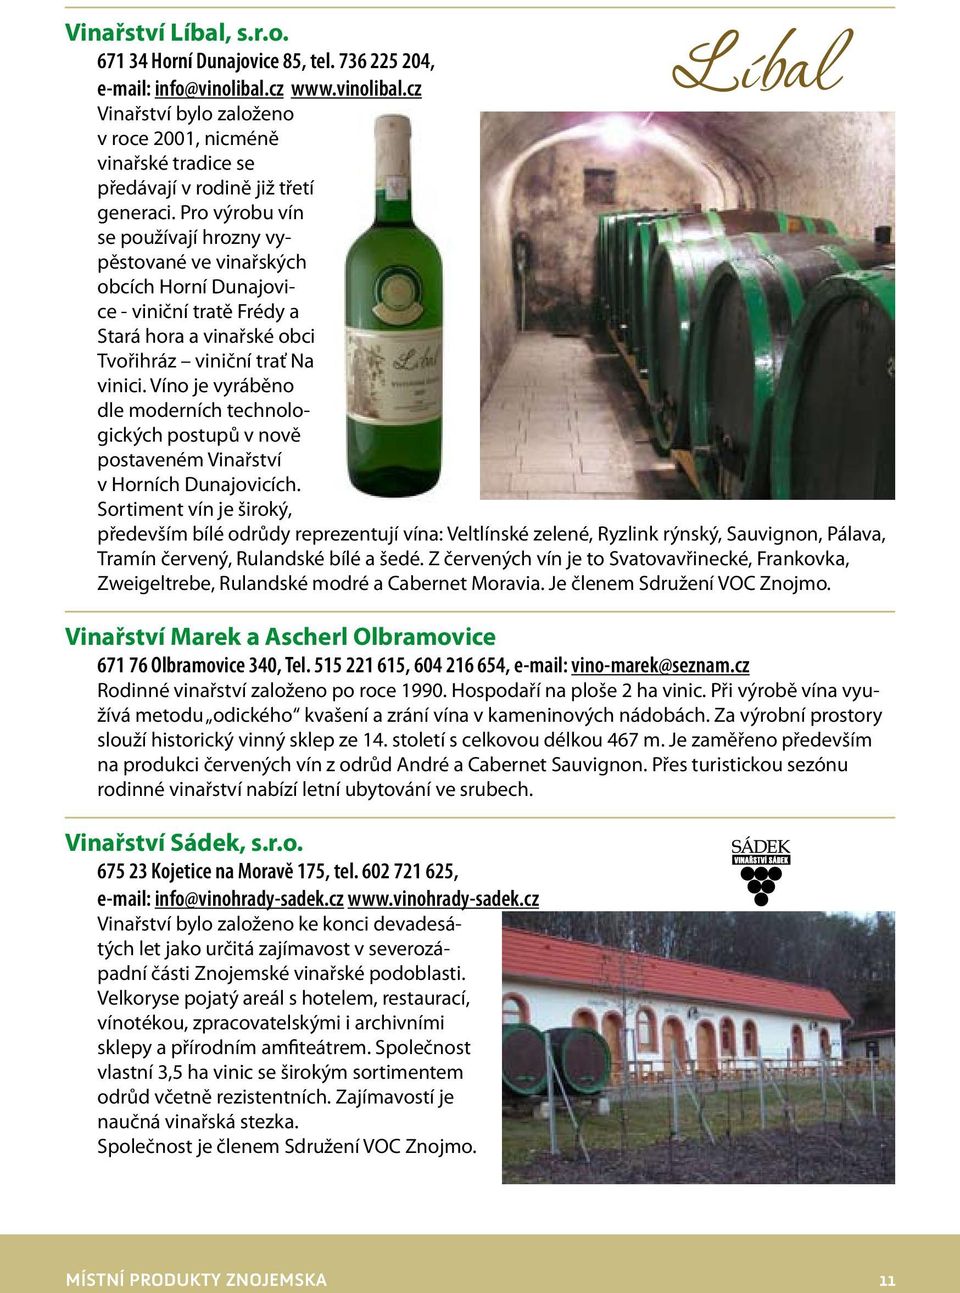 Pro výrobu vín se používají hrozny vypěstované ve vinařských obcích Horní Dunajovice - viniční tratě Frédy a Stará hora a vinařské obci Tvořihráz viniční trať Na vinici.